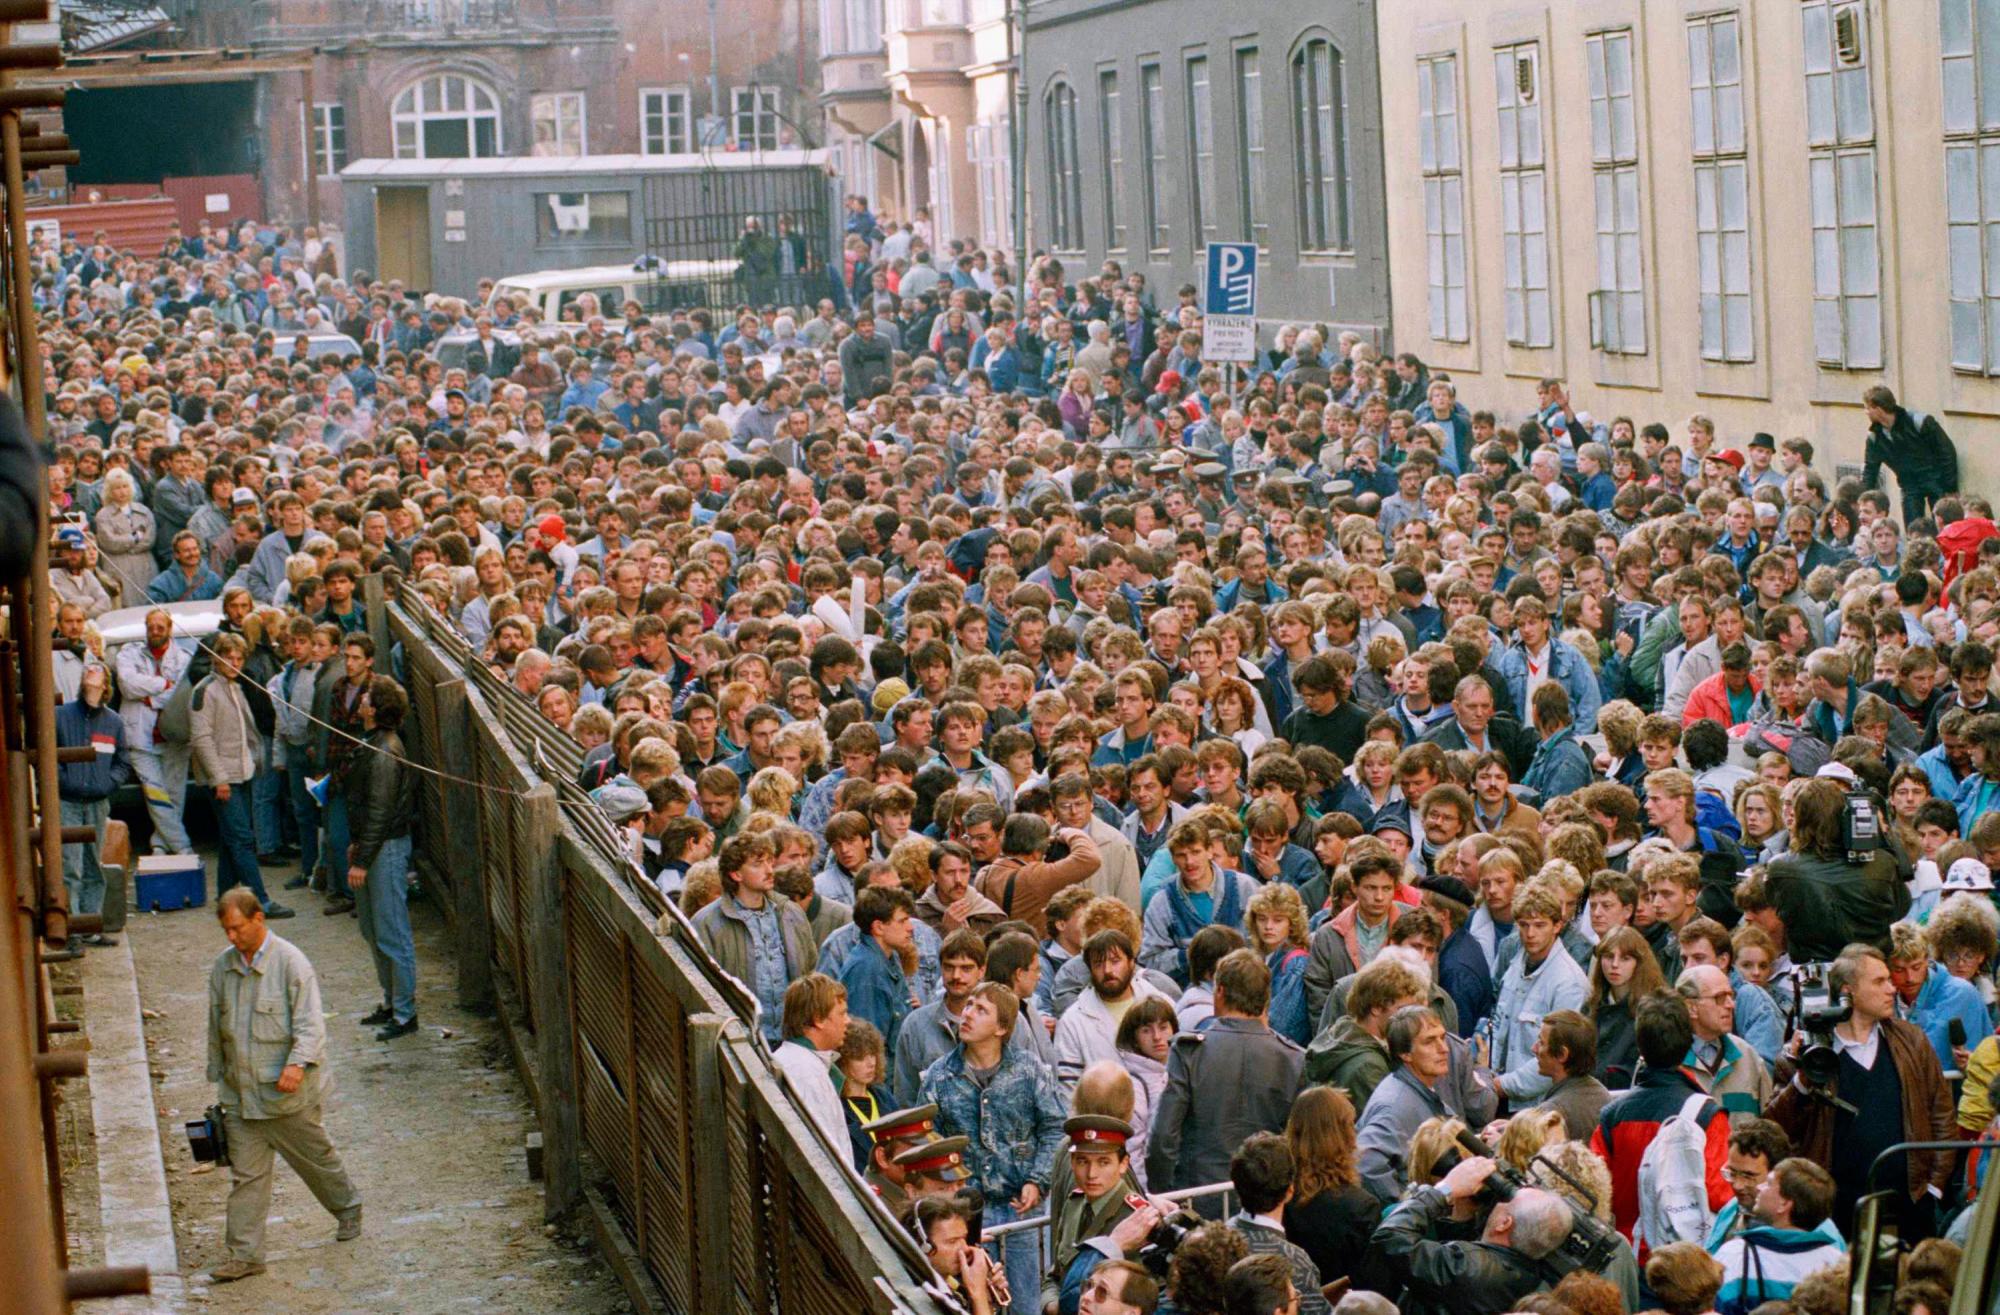 ARCHIVO - En esta foto de archivo del miércoles 4 de octubre de 1989, una multitud de alrededor de 10,000 refugiados de Alemania Oriental se agolpan en la calle frente a la embajada de Alemania Occidental en Praga, República Checa, antes de que se les permita abordar autobuses para llevarlos a trenes especiales con destino a Alemania Occidental. 